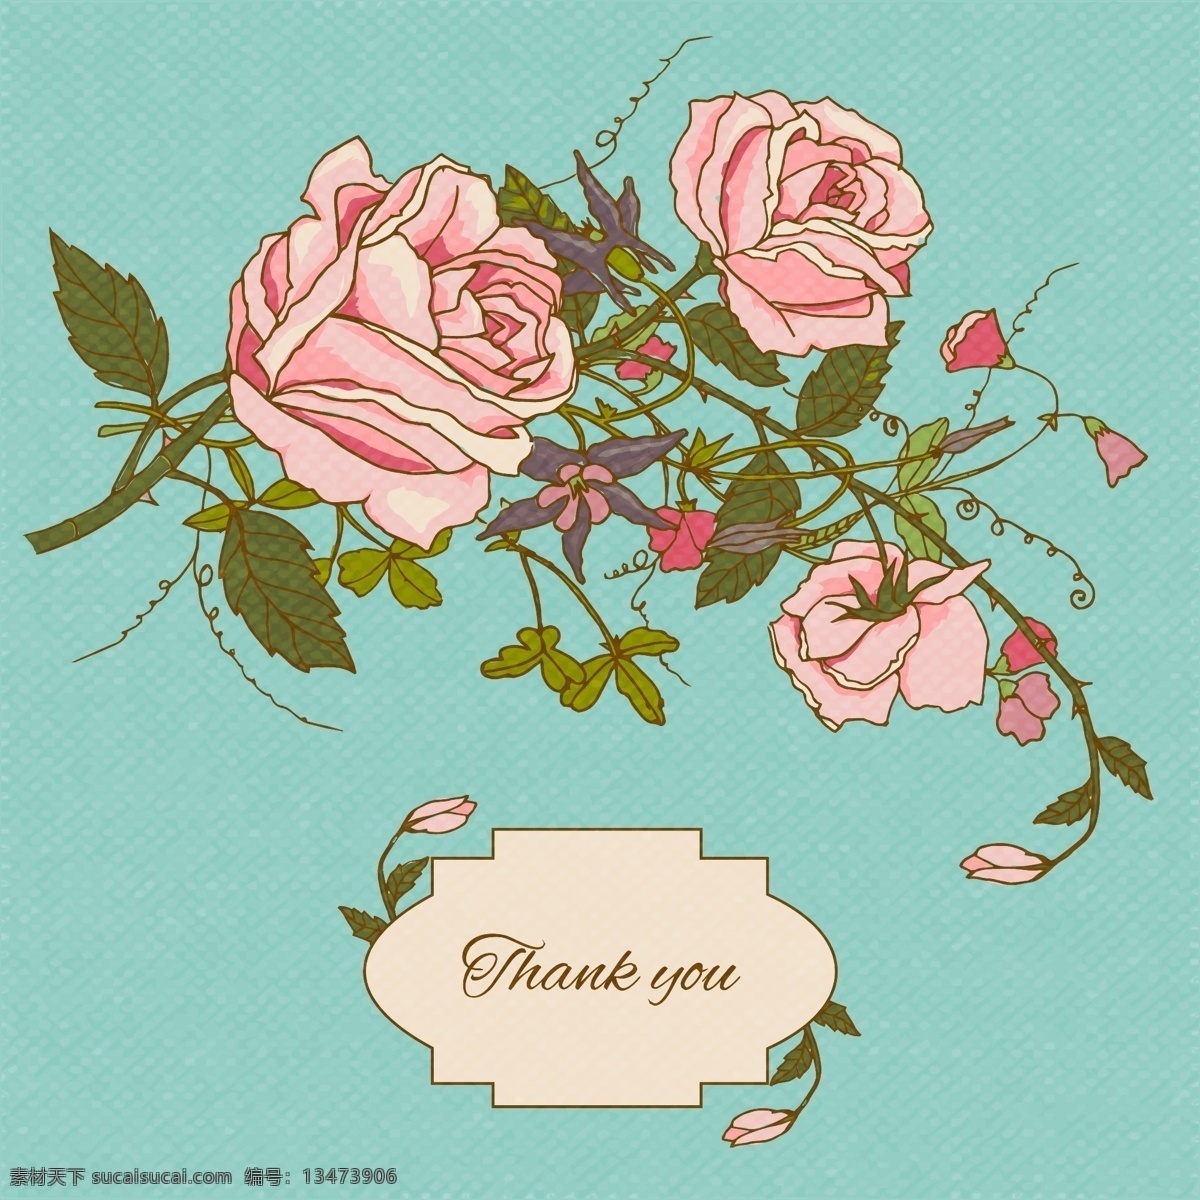 谢谢 带 花 卡片 花卉 贺卡 爱情 自然 春天 报价 树叶 字体 文字 谢谢你 植物 有趣 信息 刻字 一起 年轻 开花